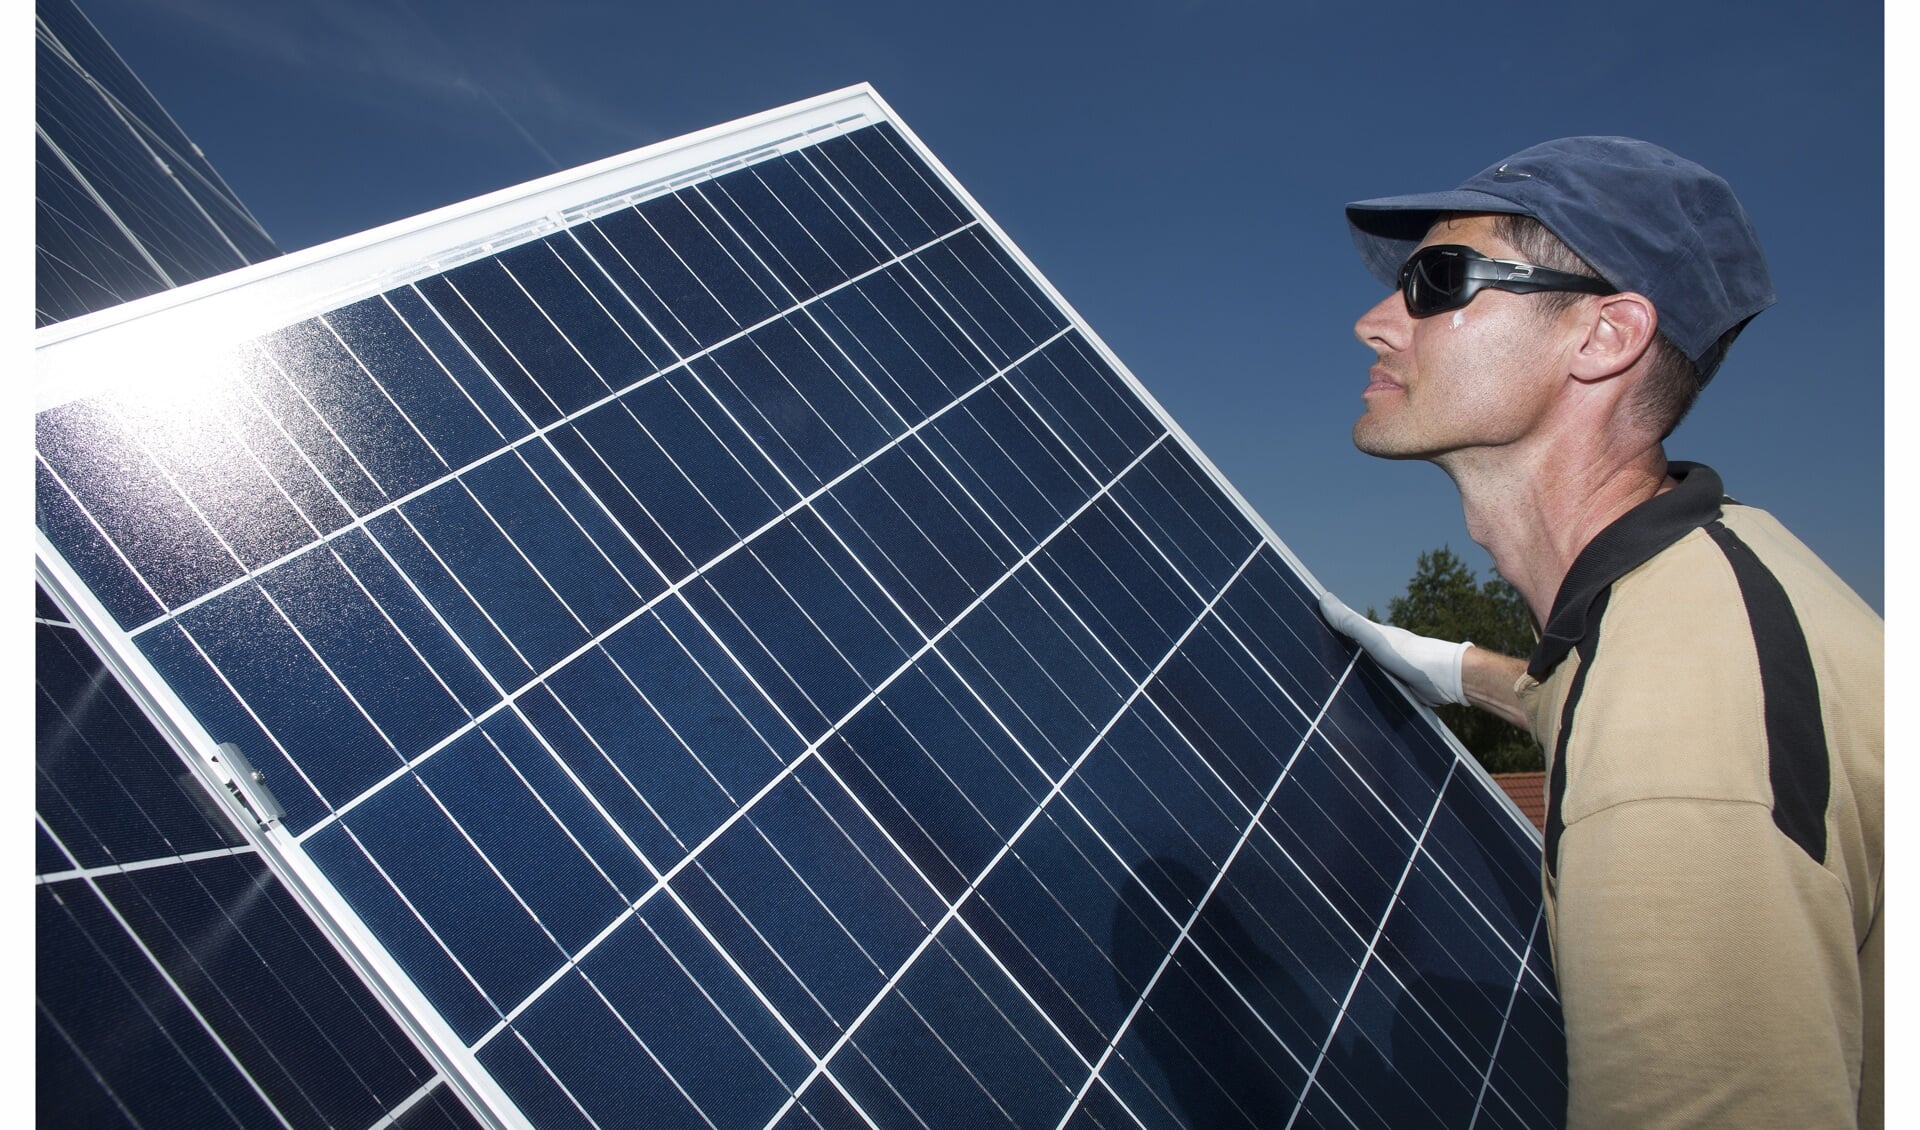 Bij de aanschaf van zonnepanelen komt ook regelgeving kijken. (Foto: PR)